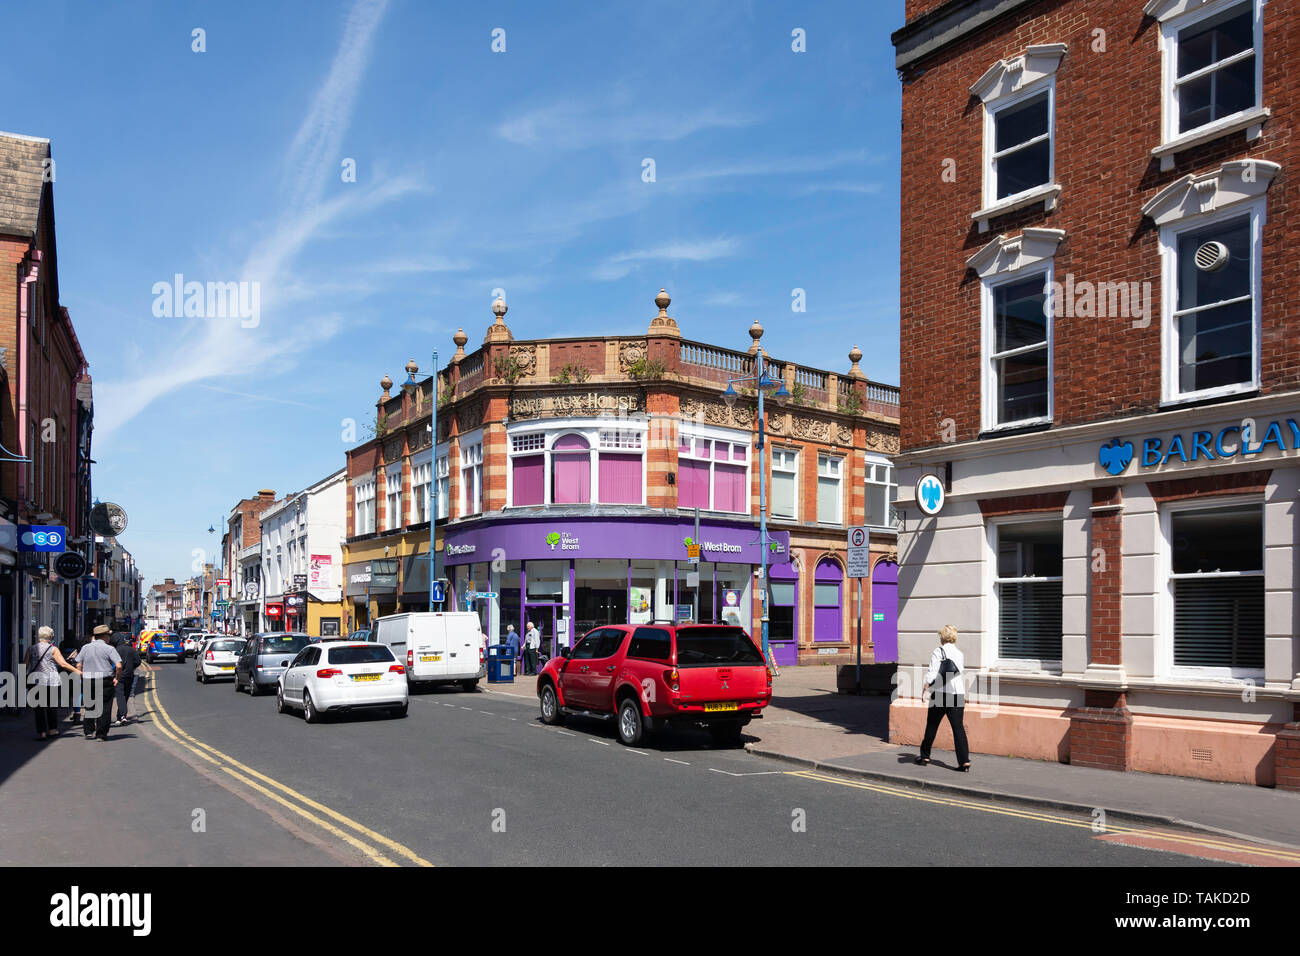 Stourbridge High Street, Stourbridge, West Midlands, England, United Kingdom Stock Photo